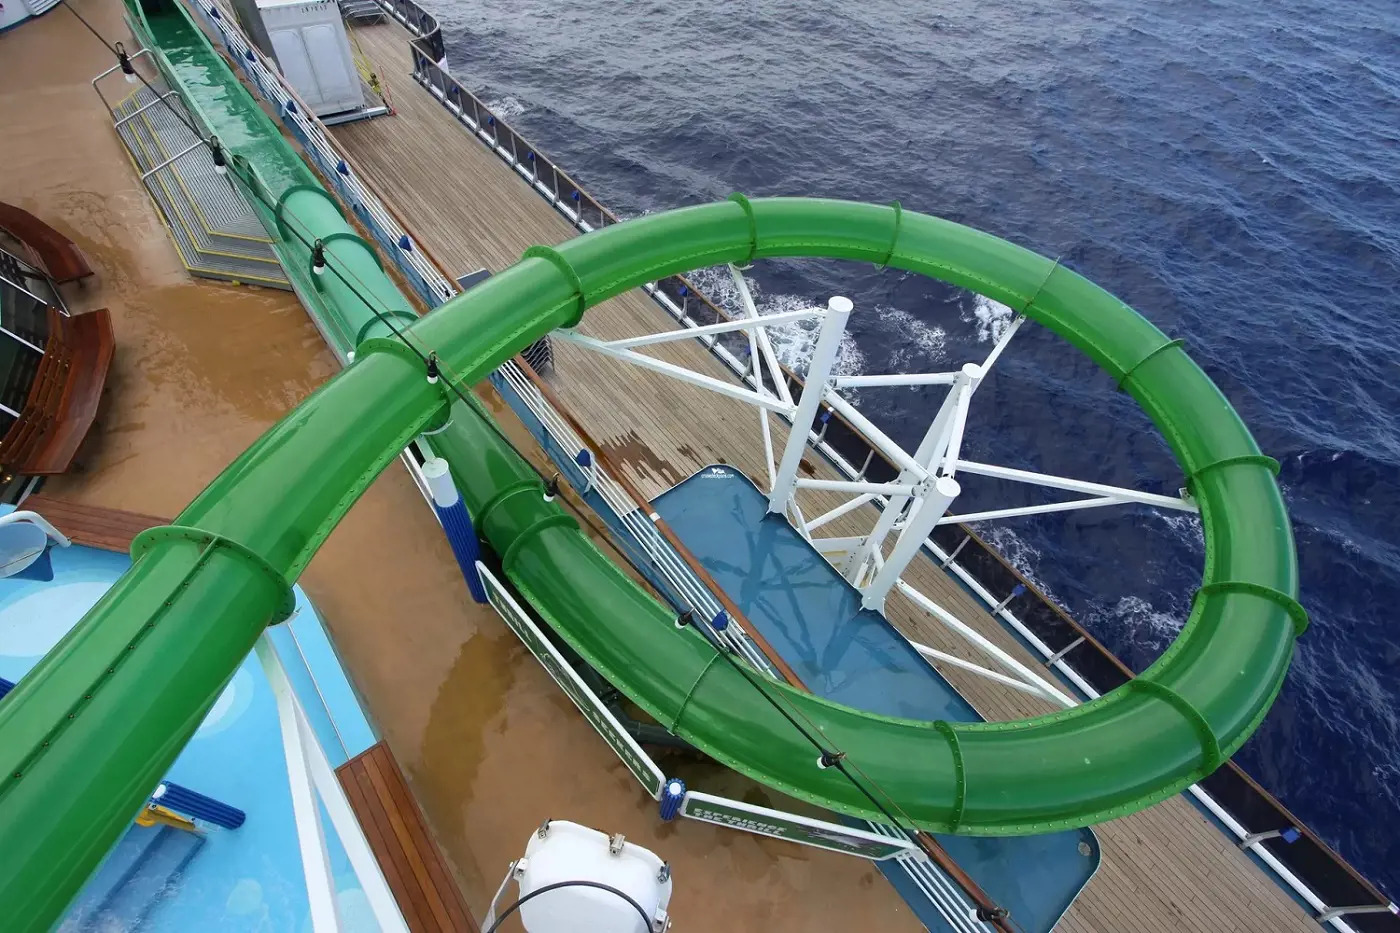 Green Thunder Thrill Slide of Carnival Spirit is 11.3 meters long